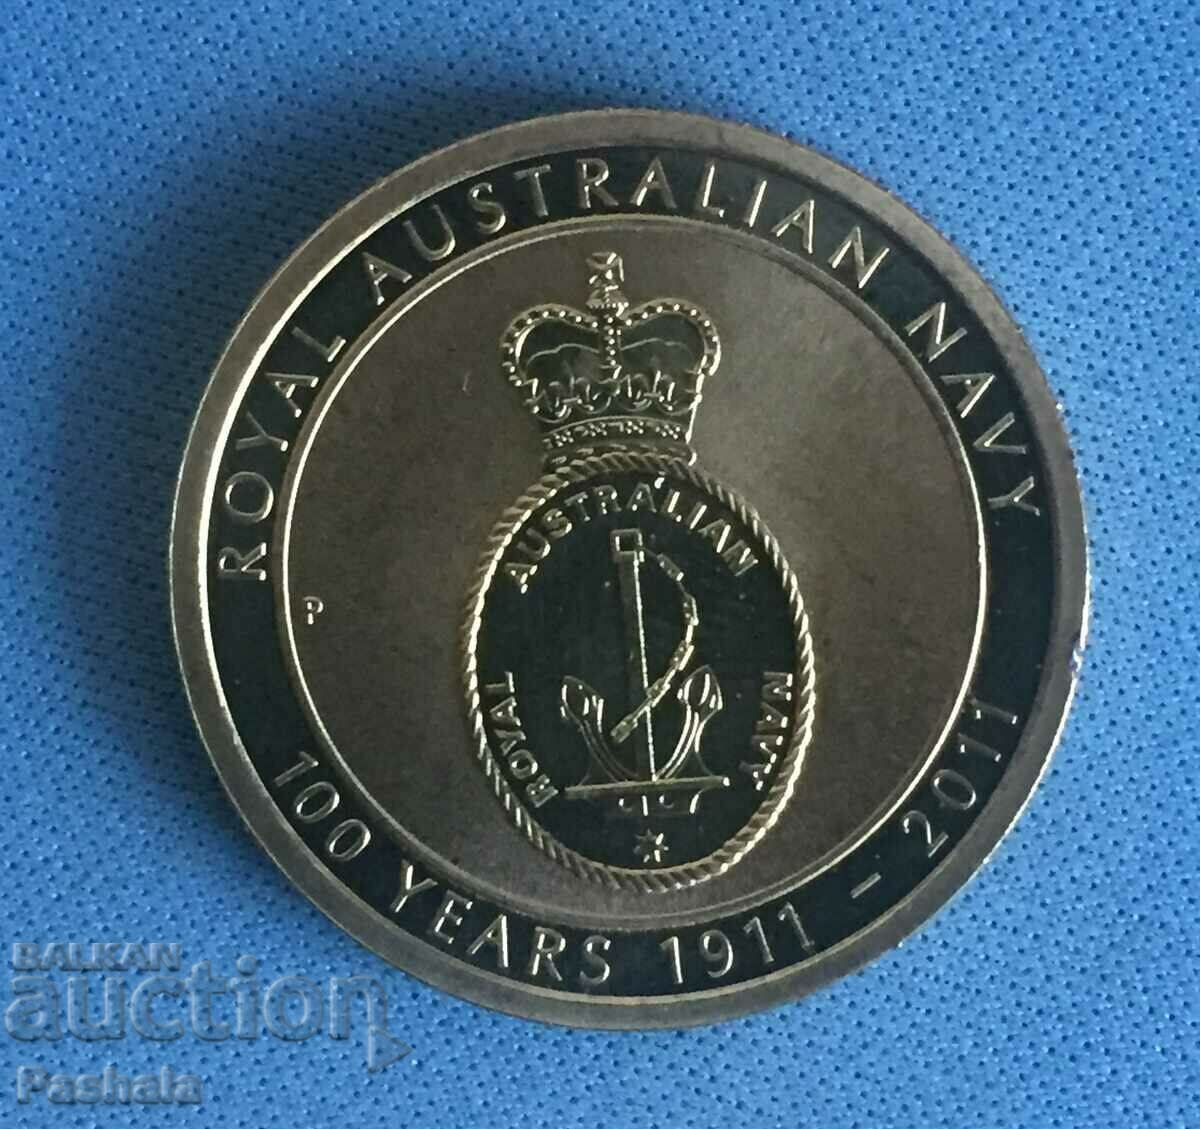 Australia $1 2011